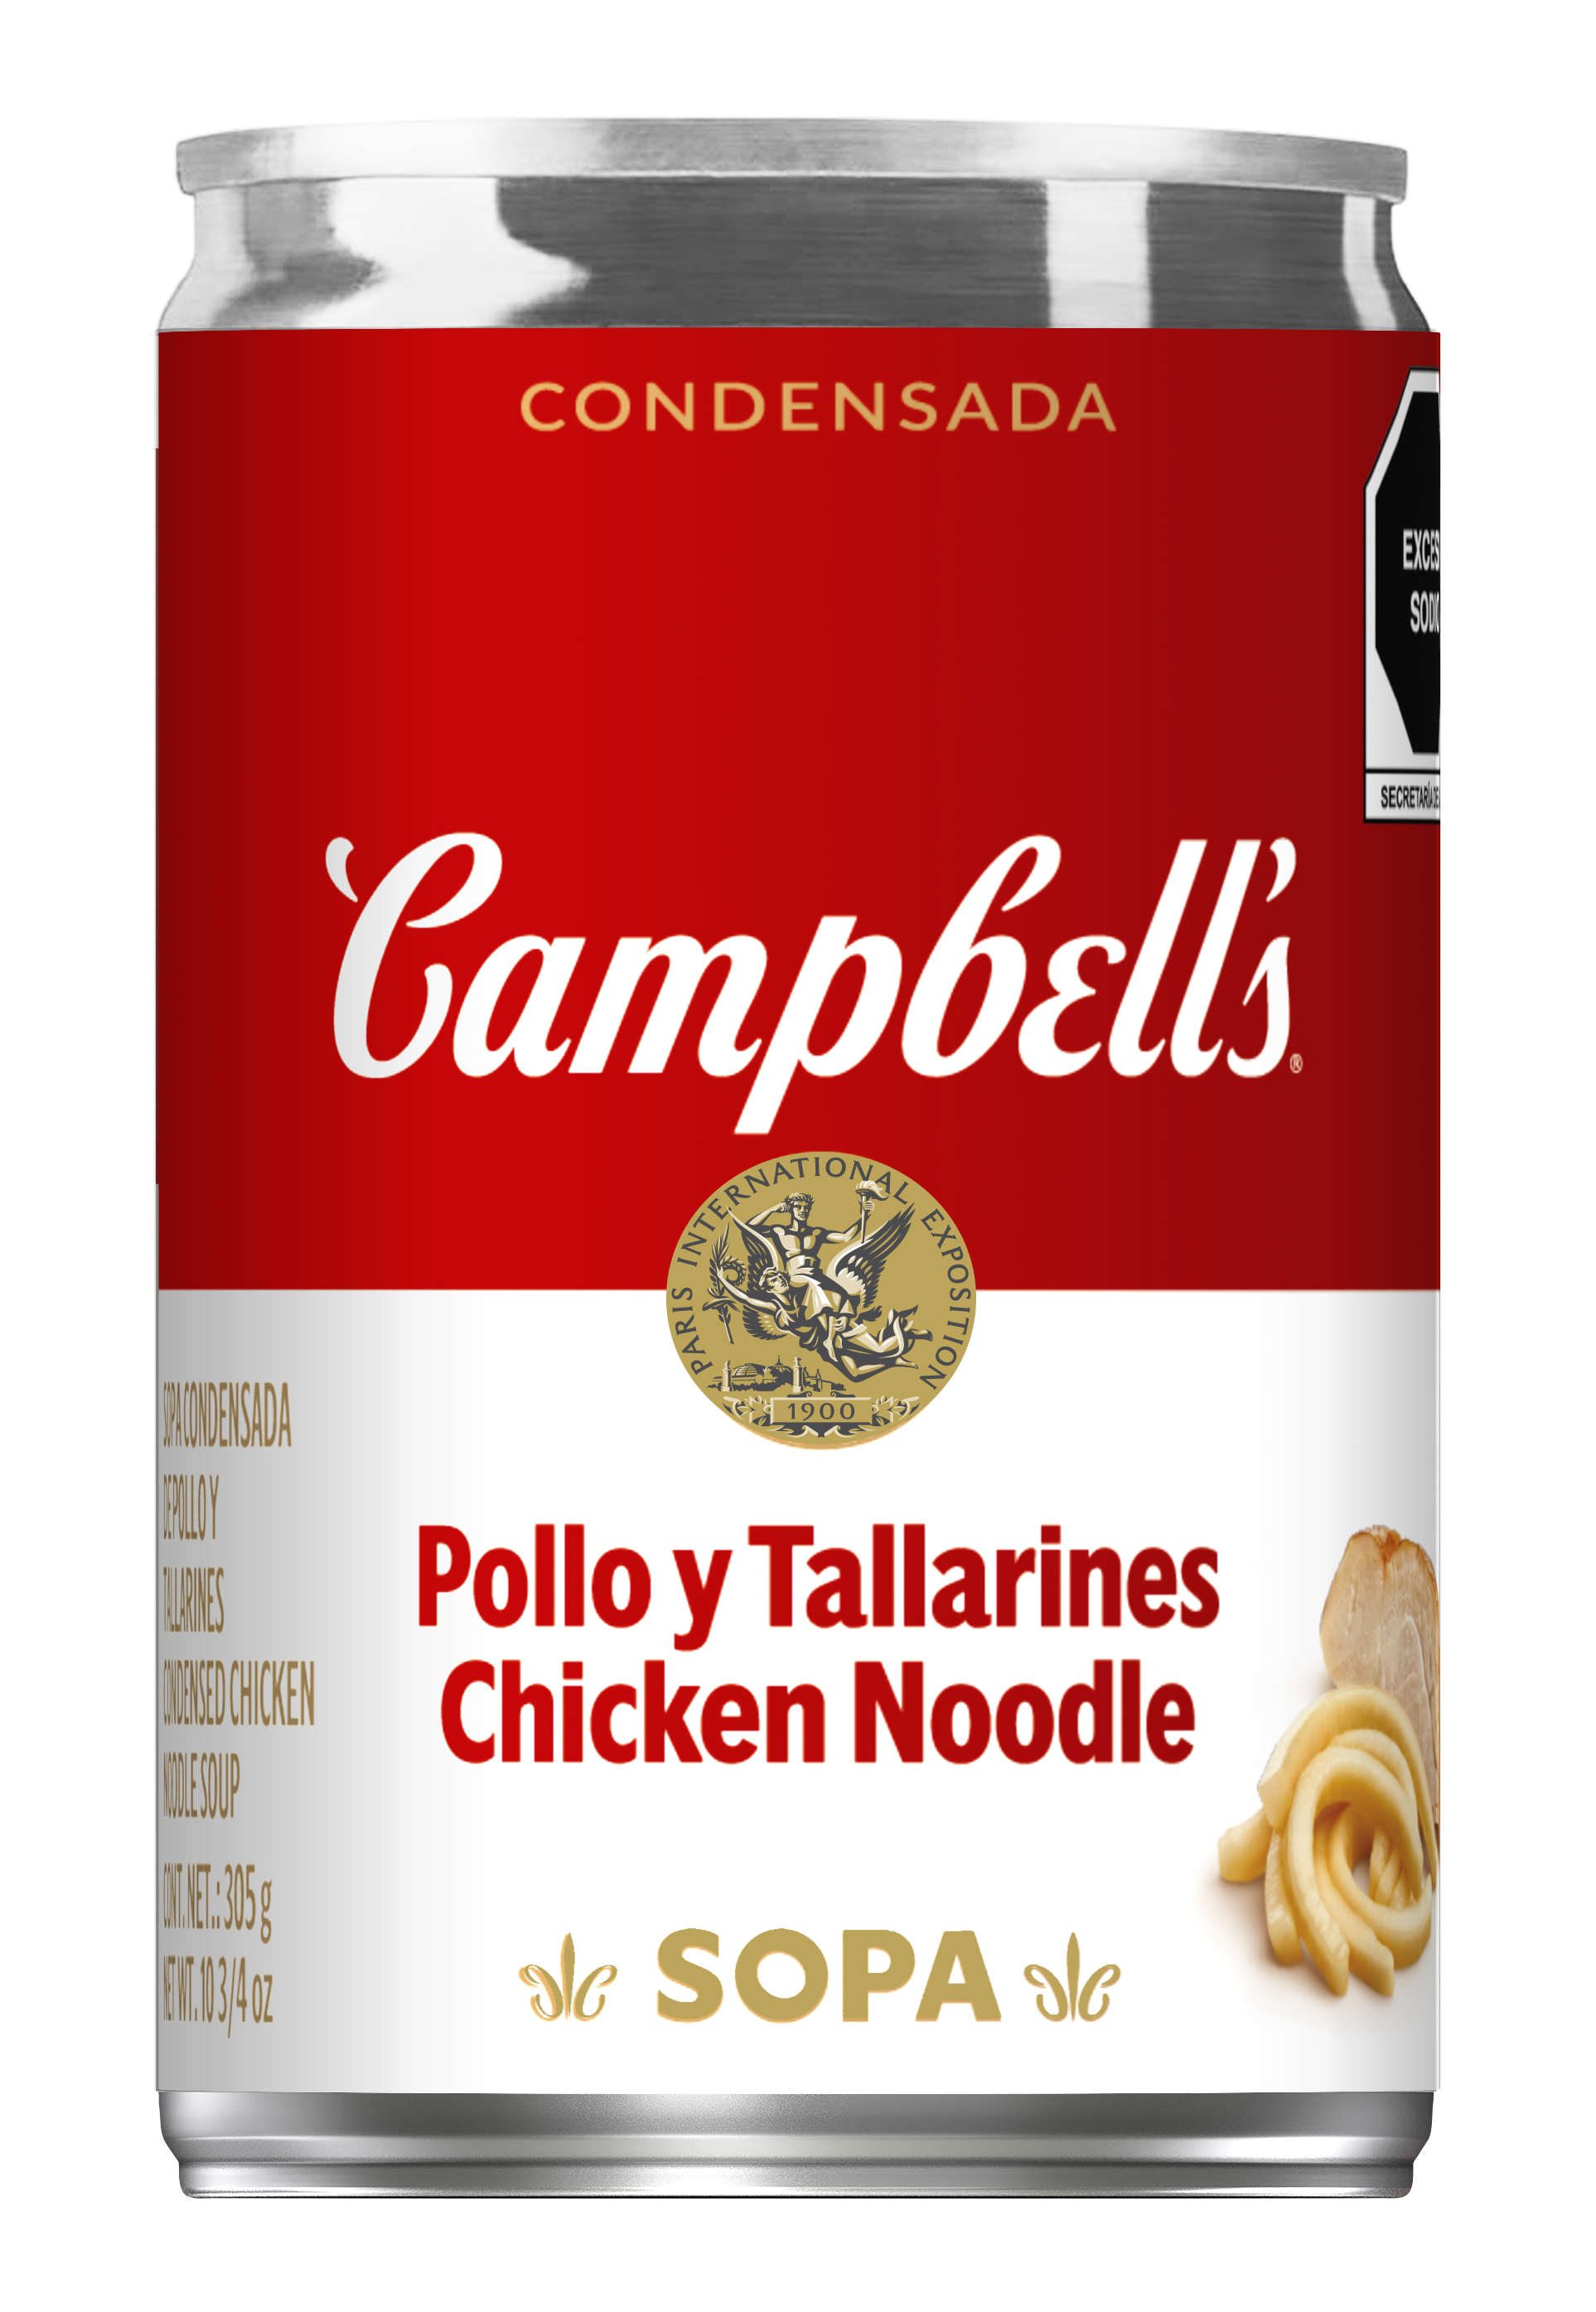 Sopa de Pollo y Tallarines / Chicken Noodle